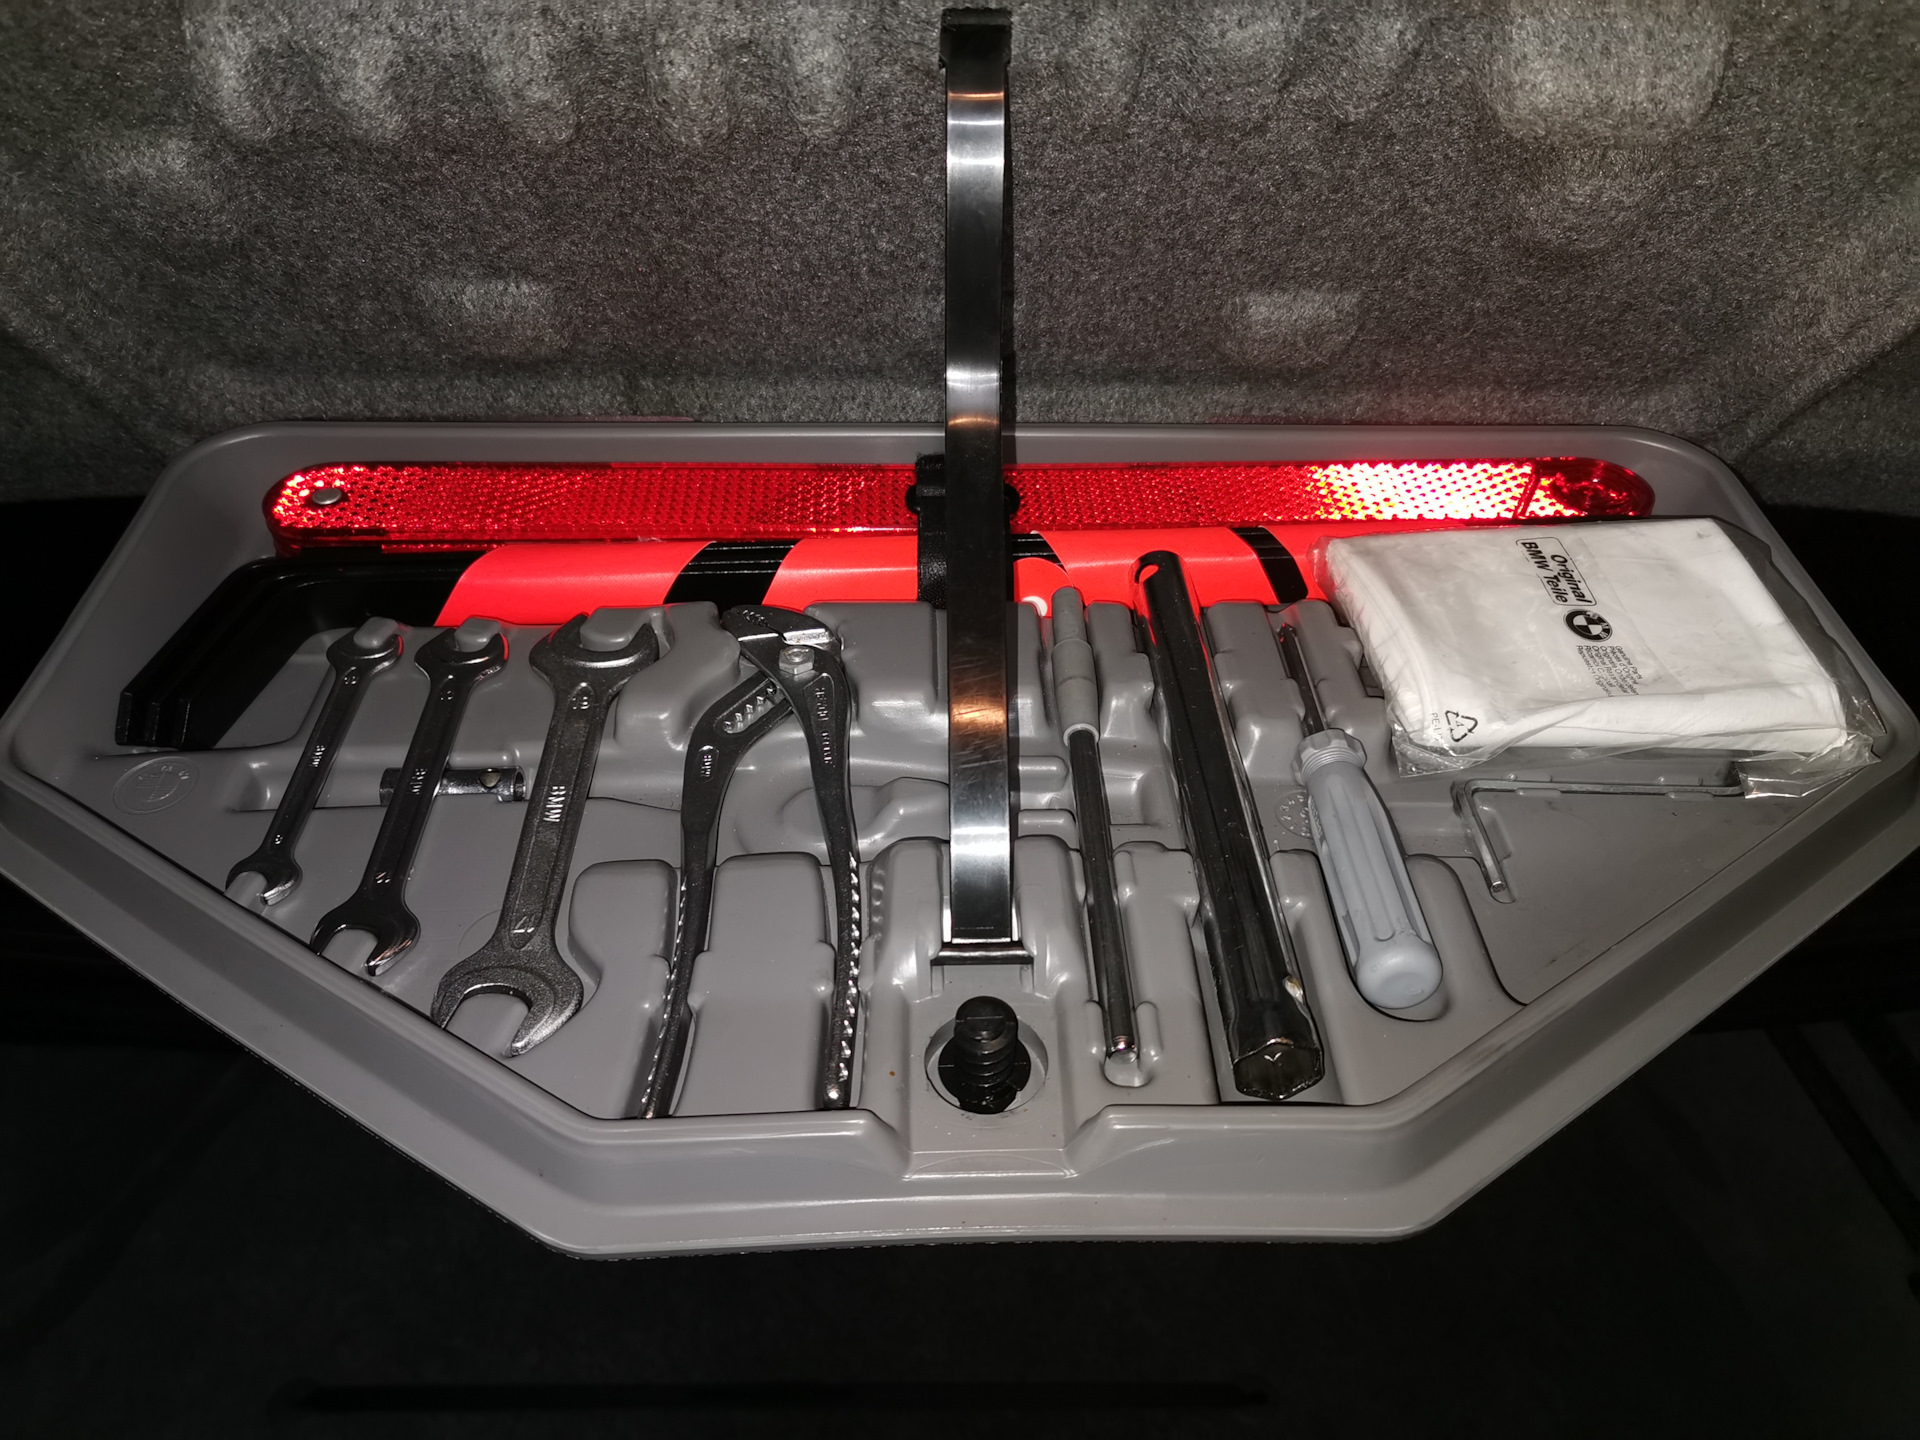 Nissan tools. Штатный набор инструментов БМВ х3 е83. Штатный набор инструментов для BMW g21. Штатный инструмент БМВ е53. Outlander 4 штатный инструмент.